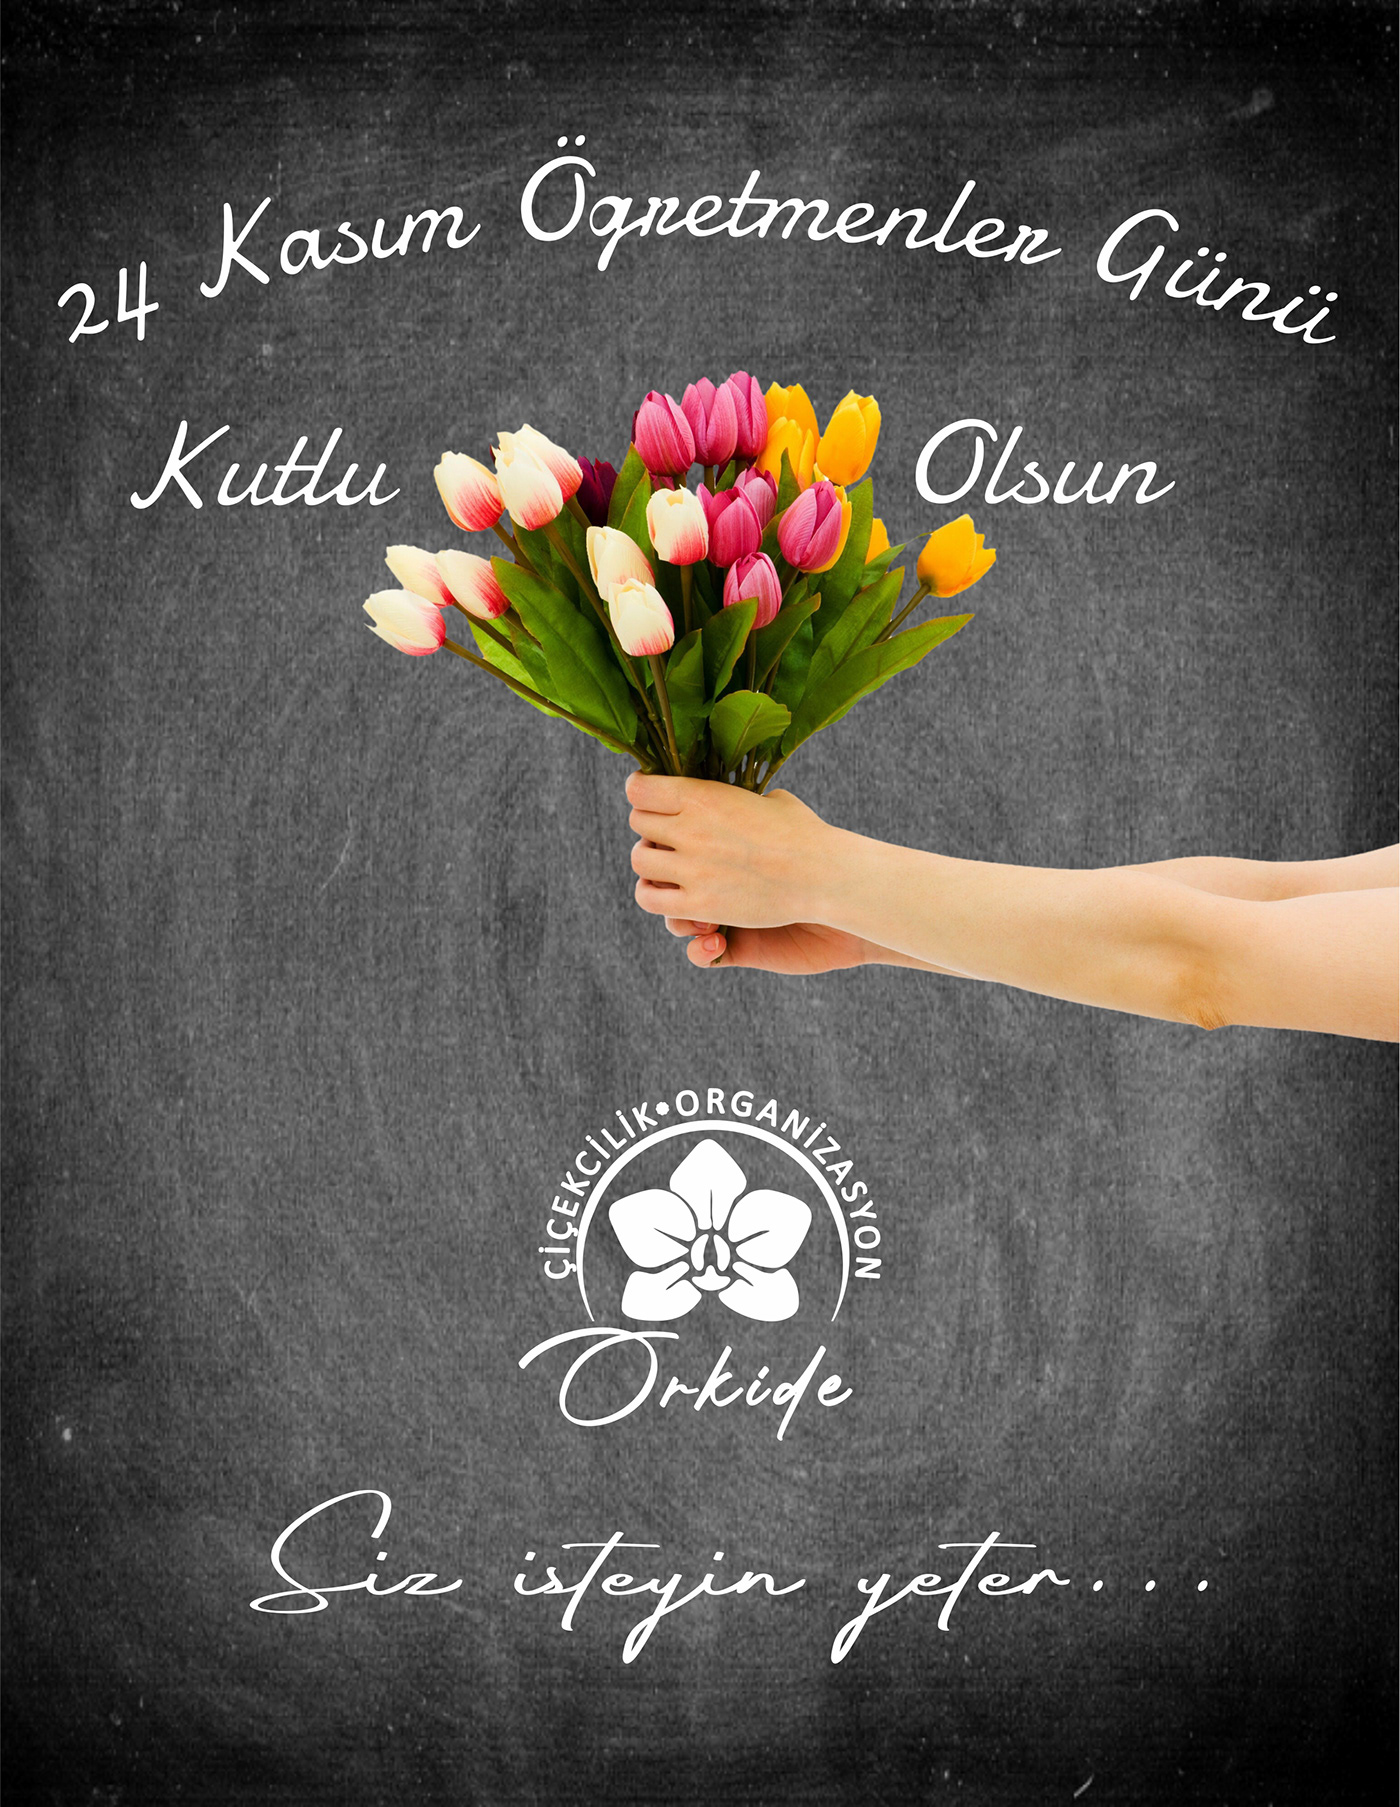 24kaısm Anneler bayram Buket çiçek Eğitim kutlama Lale Öğretmen tahta